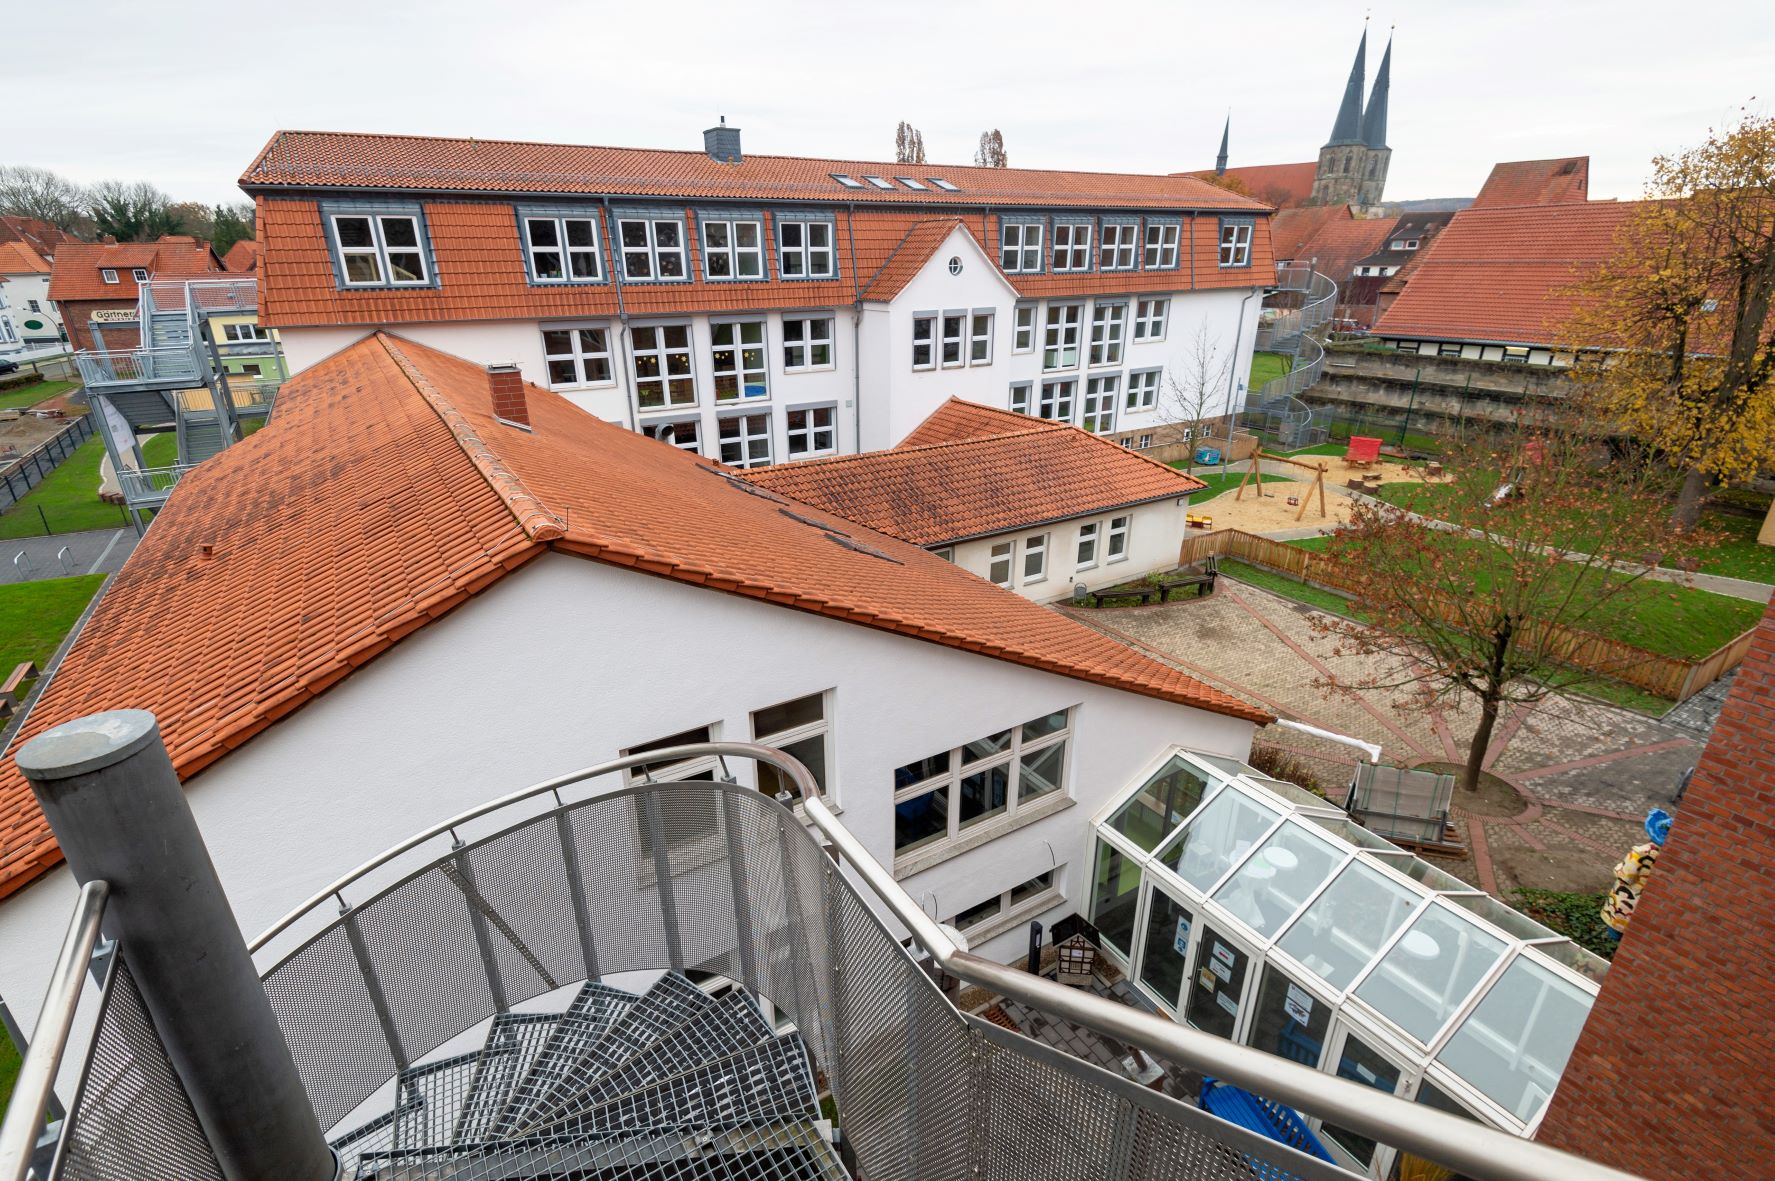 Auch im Inklusiven Campus Duderstadt werden Heilerziehungspfleger*innen beschäftigt. | Foto: Niklas Richter / Caritas